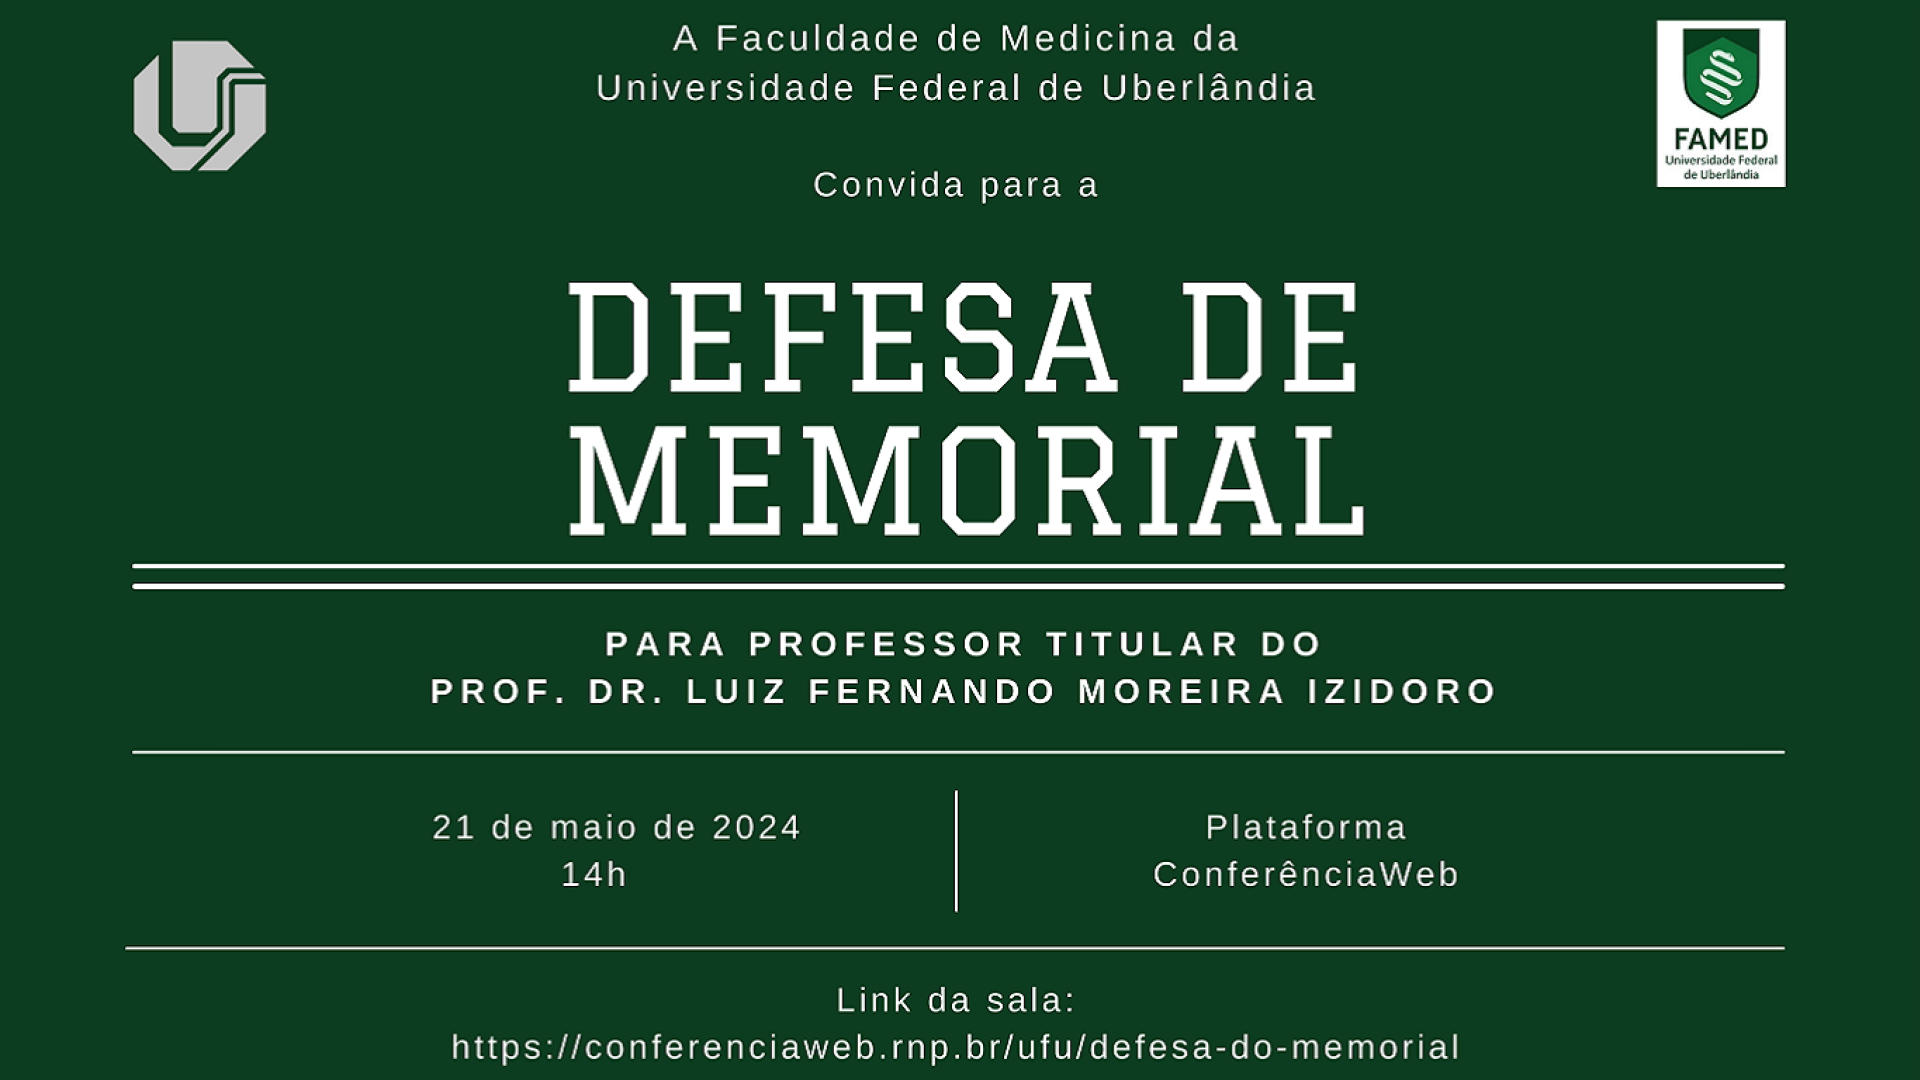 Arte com fundo verde, as logos da UFU e da Famed e as informações gerais sobre a defesa de memorial